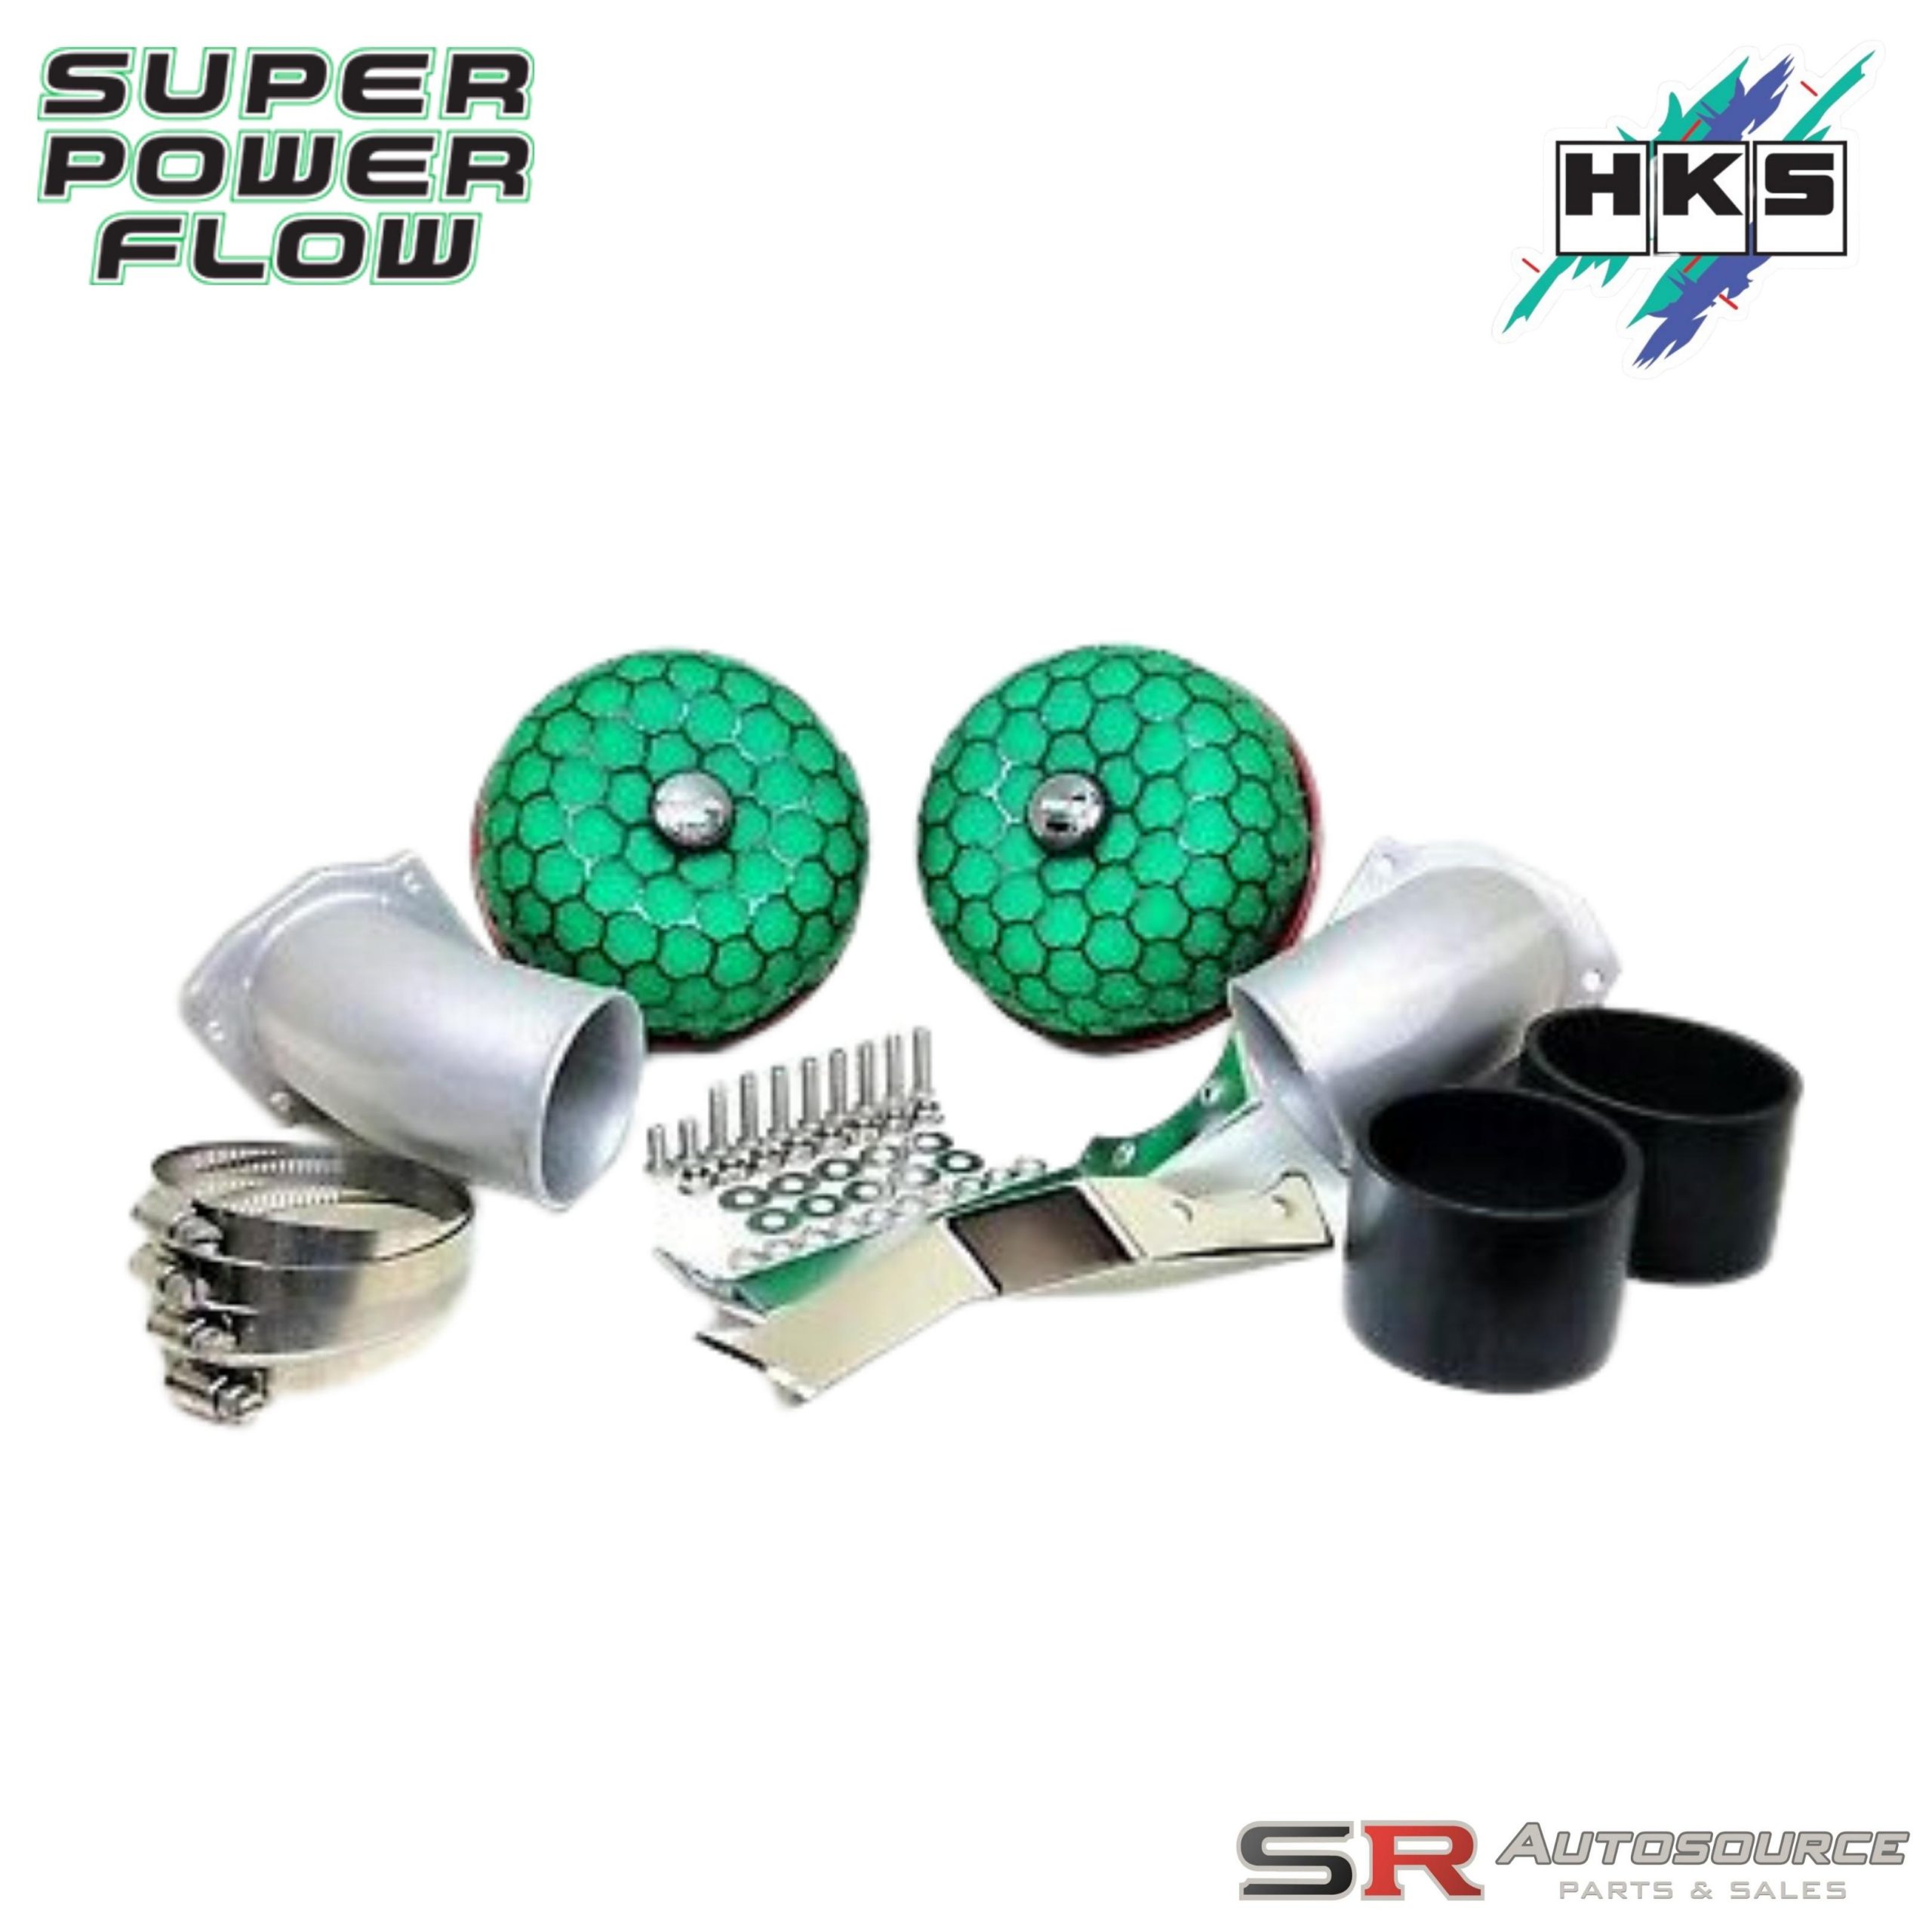 HKS Super Power Flow Intake Kit for Skyline R32 GTR BNR32 RB26DETT